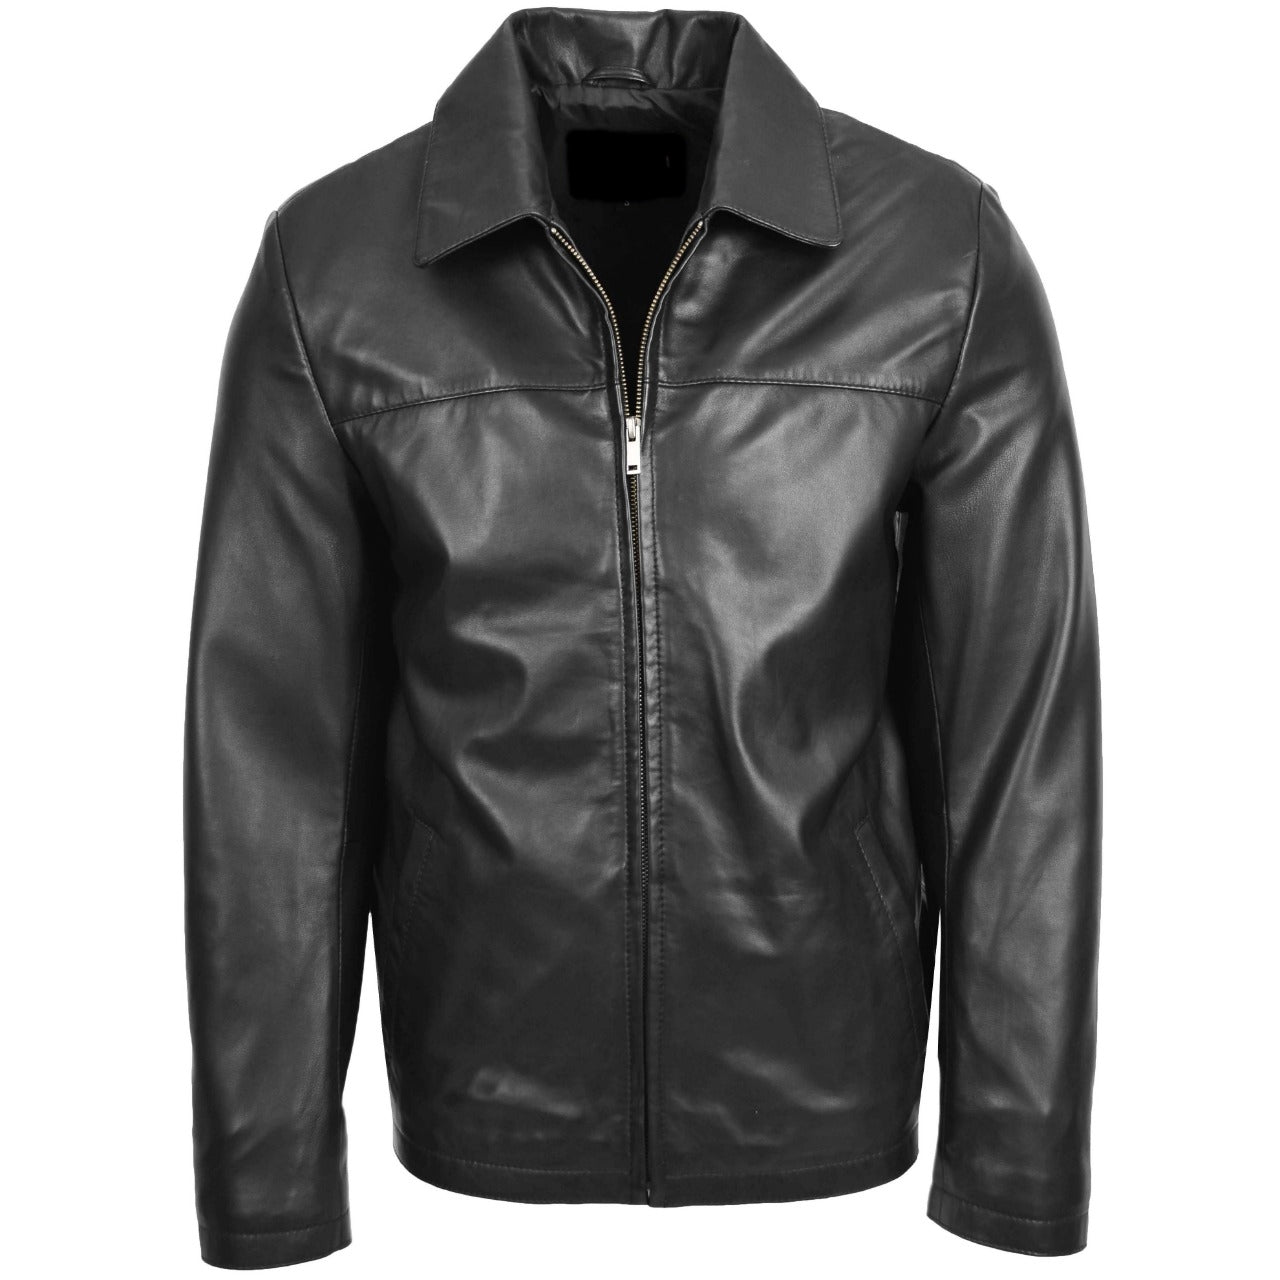 Black Real Leather Jacket Men